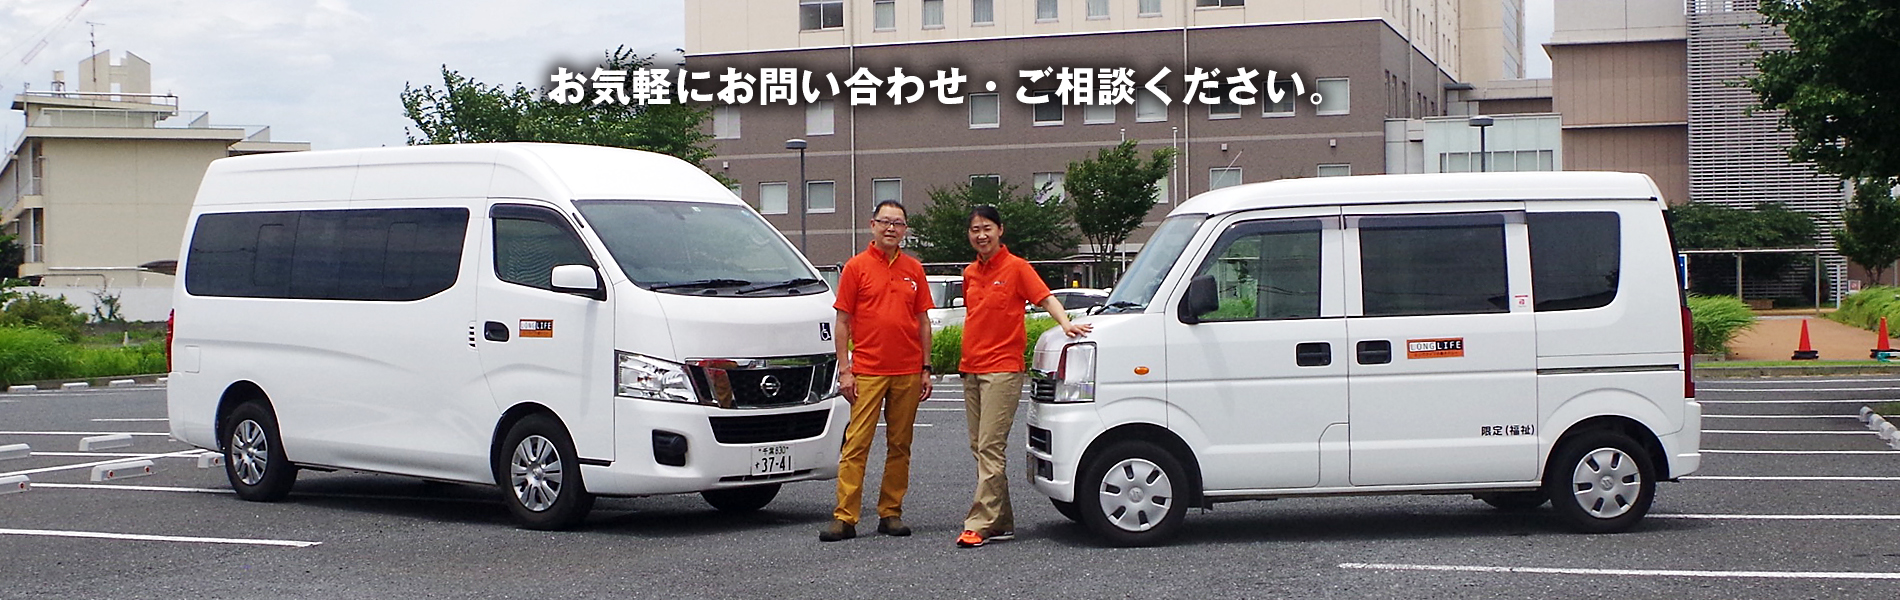 千葉県千葉市の介護タクシー、車椅子タクシー